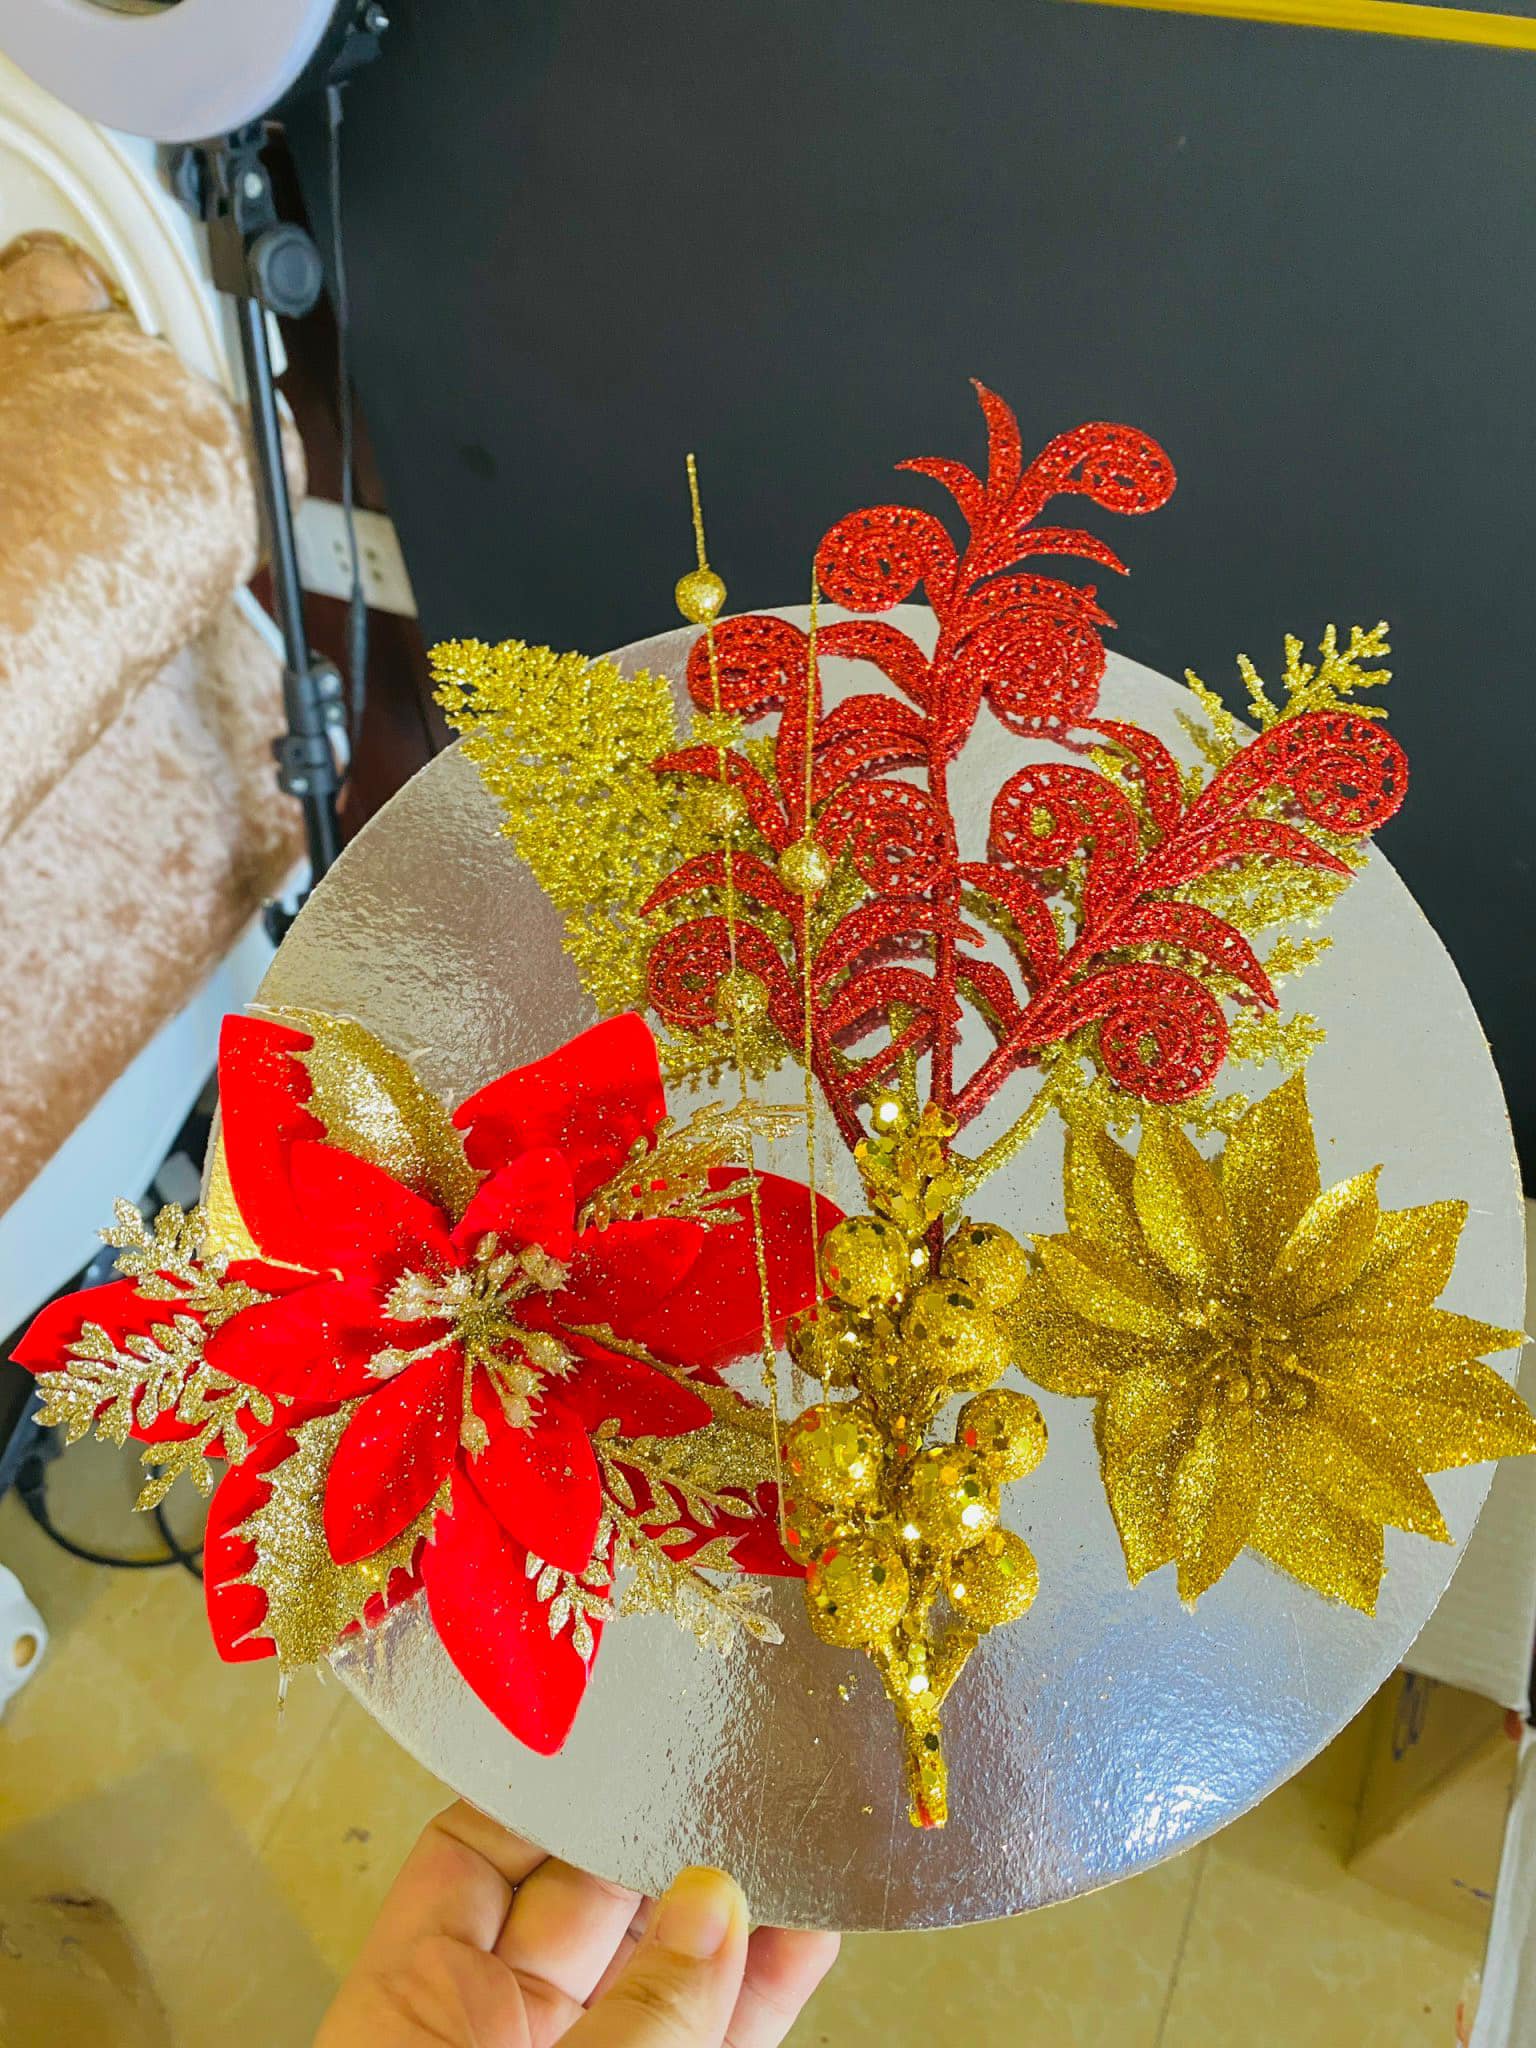 Set nguyên liệu hoa trạng nguyên làm tháp bánh kẹo, oản, nước ngọt trang trí lễ tết tiệc đẹp